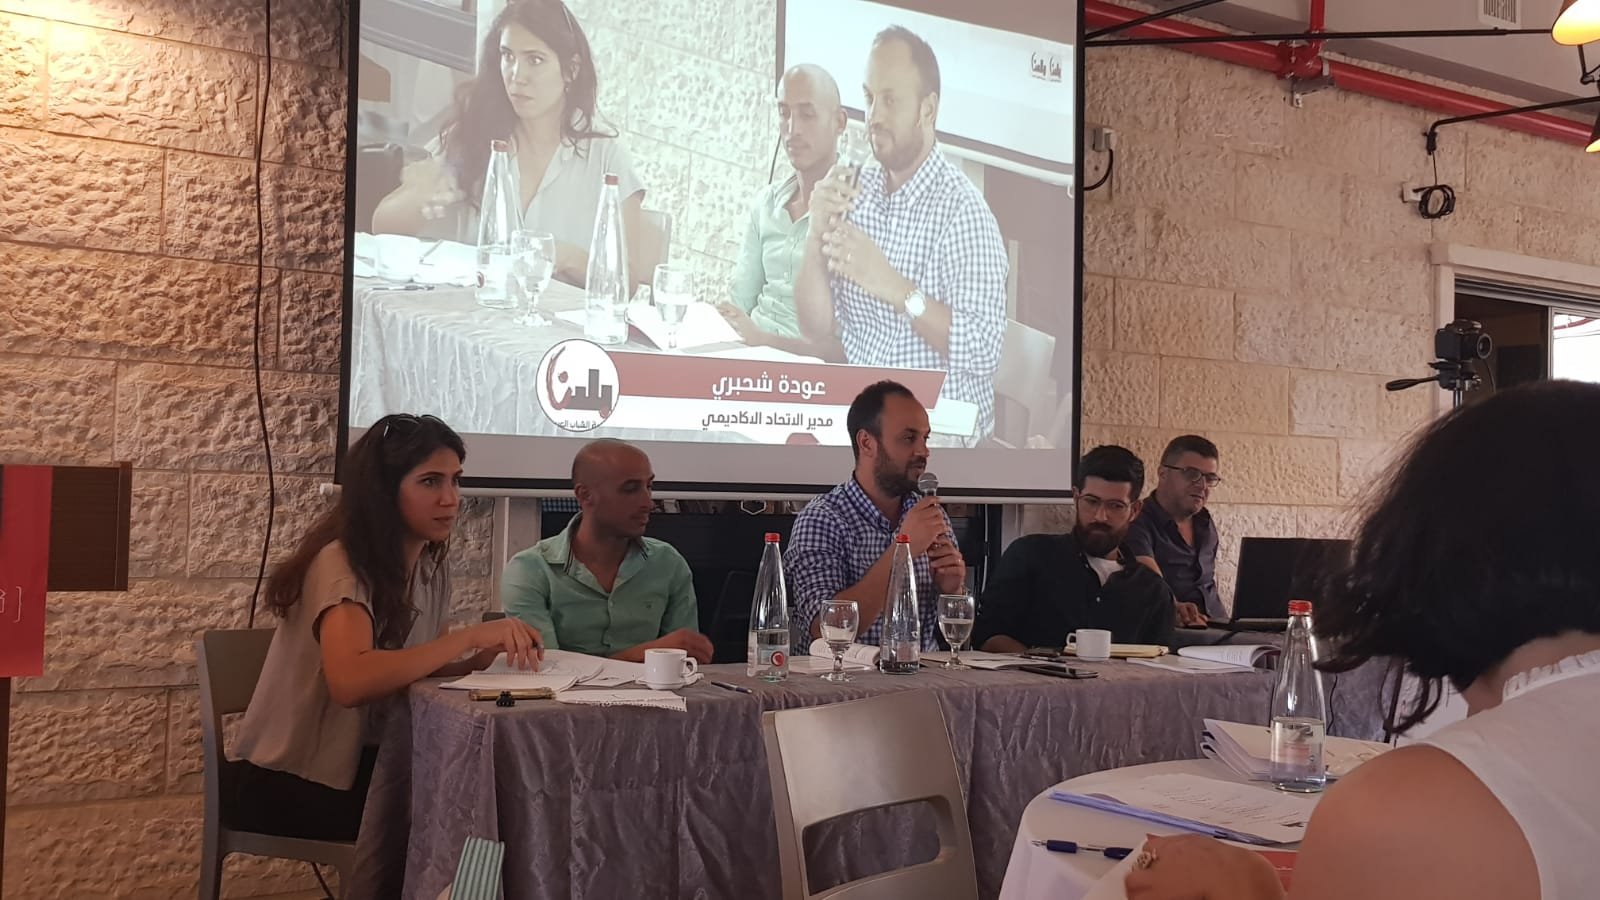 مؤتمر "قضايا الشباب": عرض نتائج بحث حول احتياجات وتصورات ومواقف الشباب في الداخل الفلسطيني-6